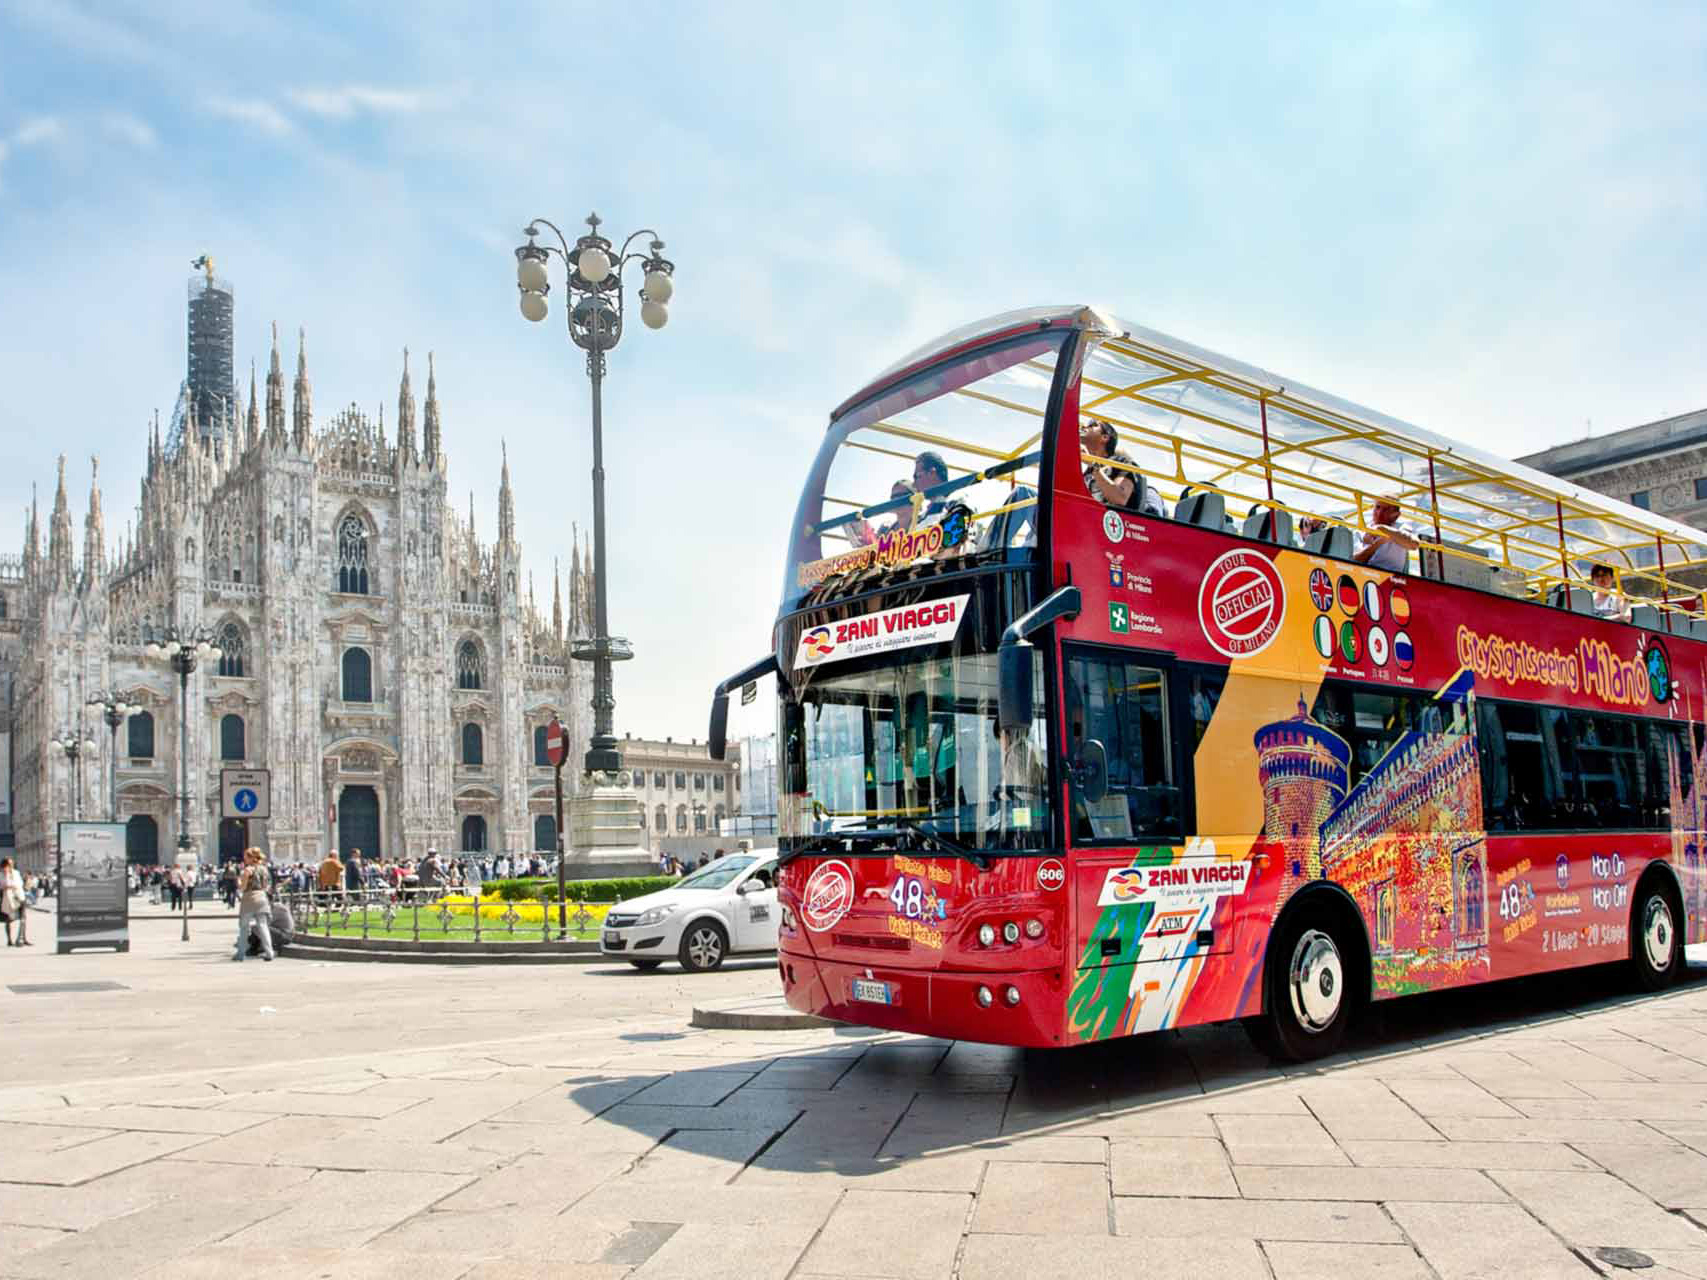 tour bus in milan